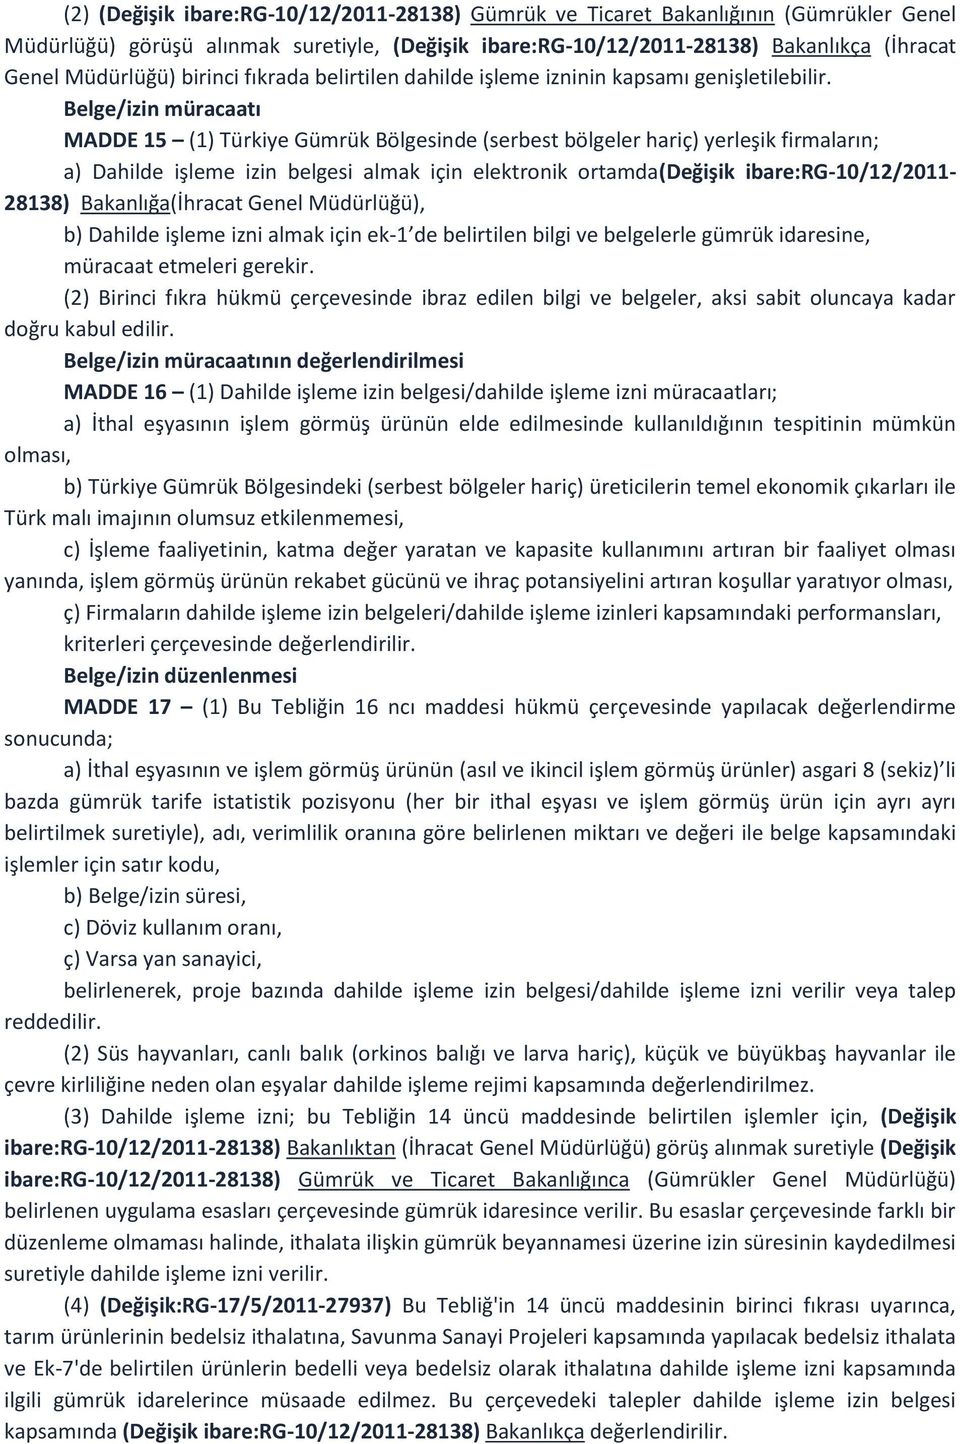 Belge/izin müracaatı MADDE 15 (1) Türkiye Gümrük Bölgesinde (serbest bölgeler hariç) yerleşik firmaların; a) Dahilde işleme izin belgesi almak için elektronik ortamda(değişik